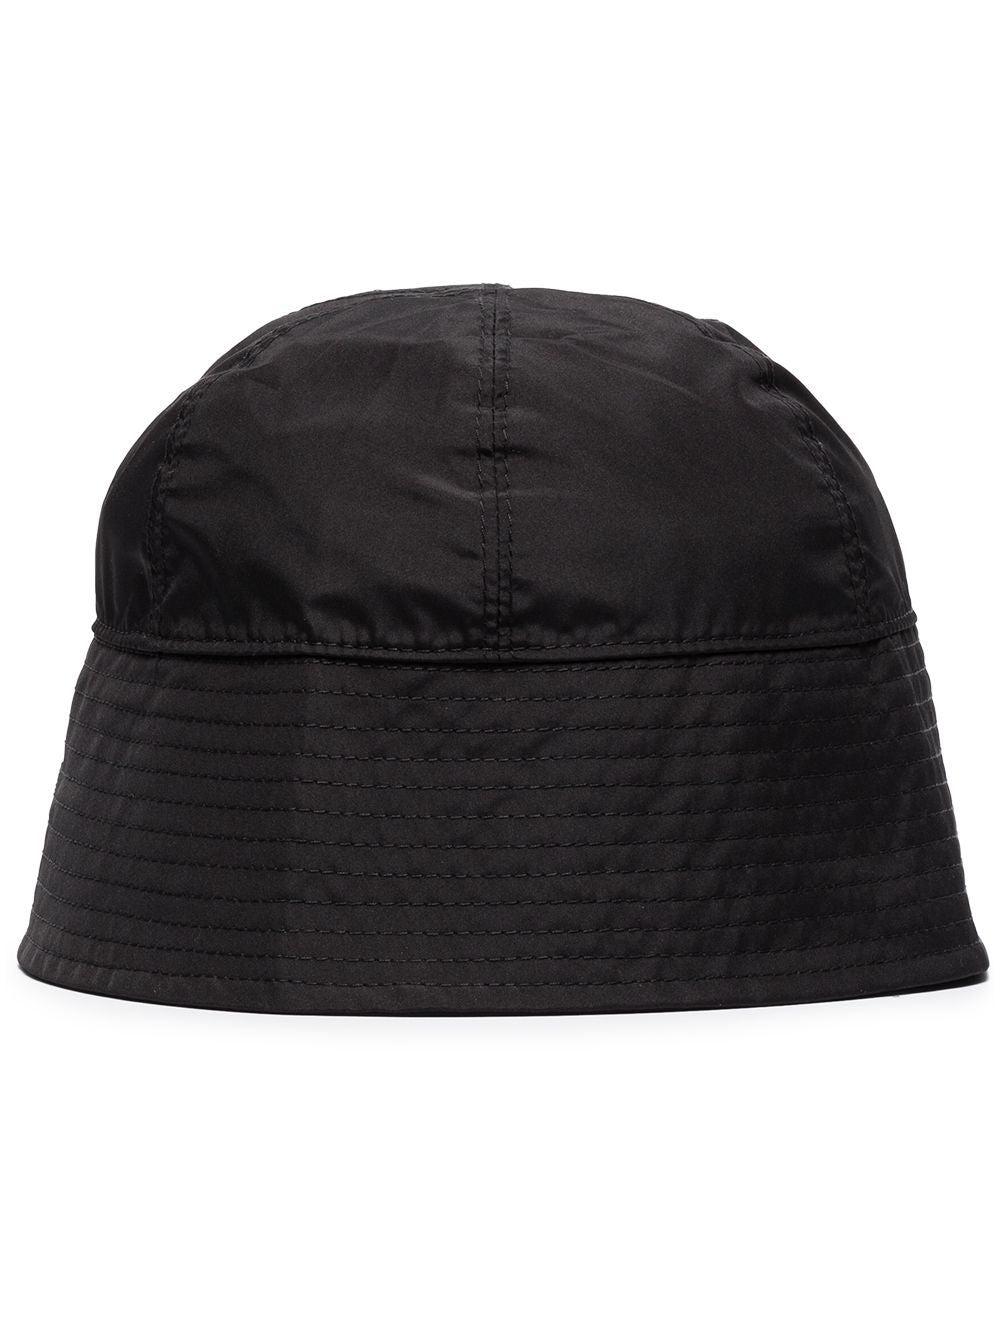 Alyx Men's Bucket Hat W/ Buckle (Black) by ALYX